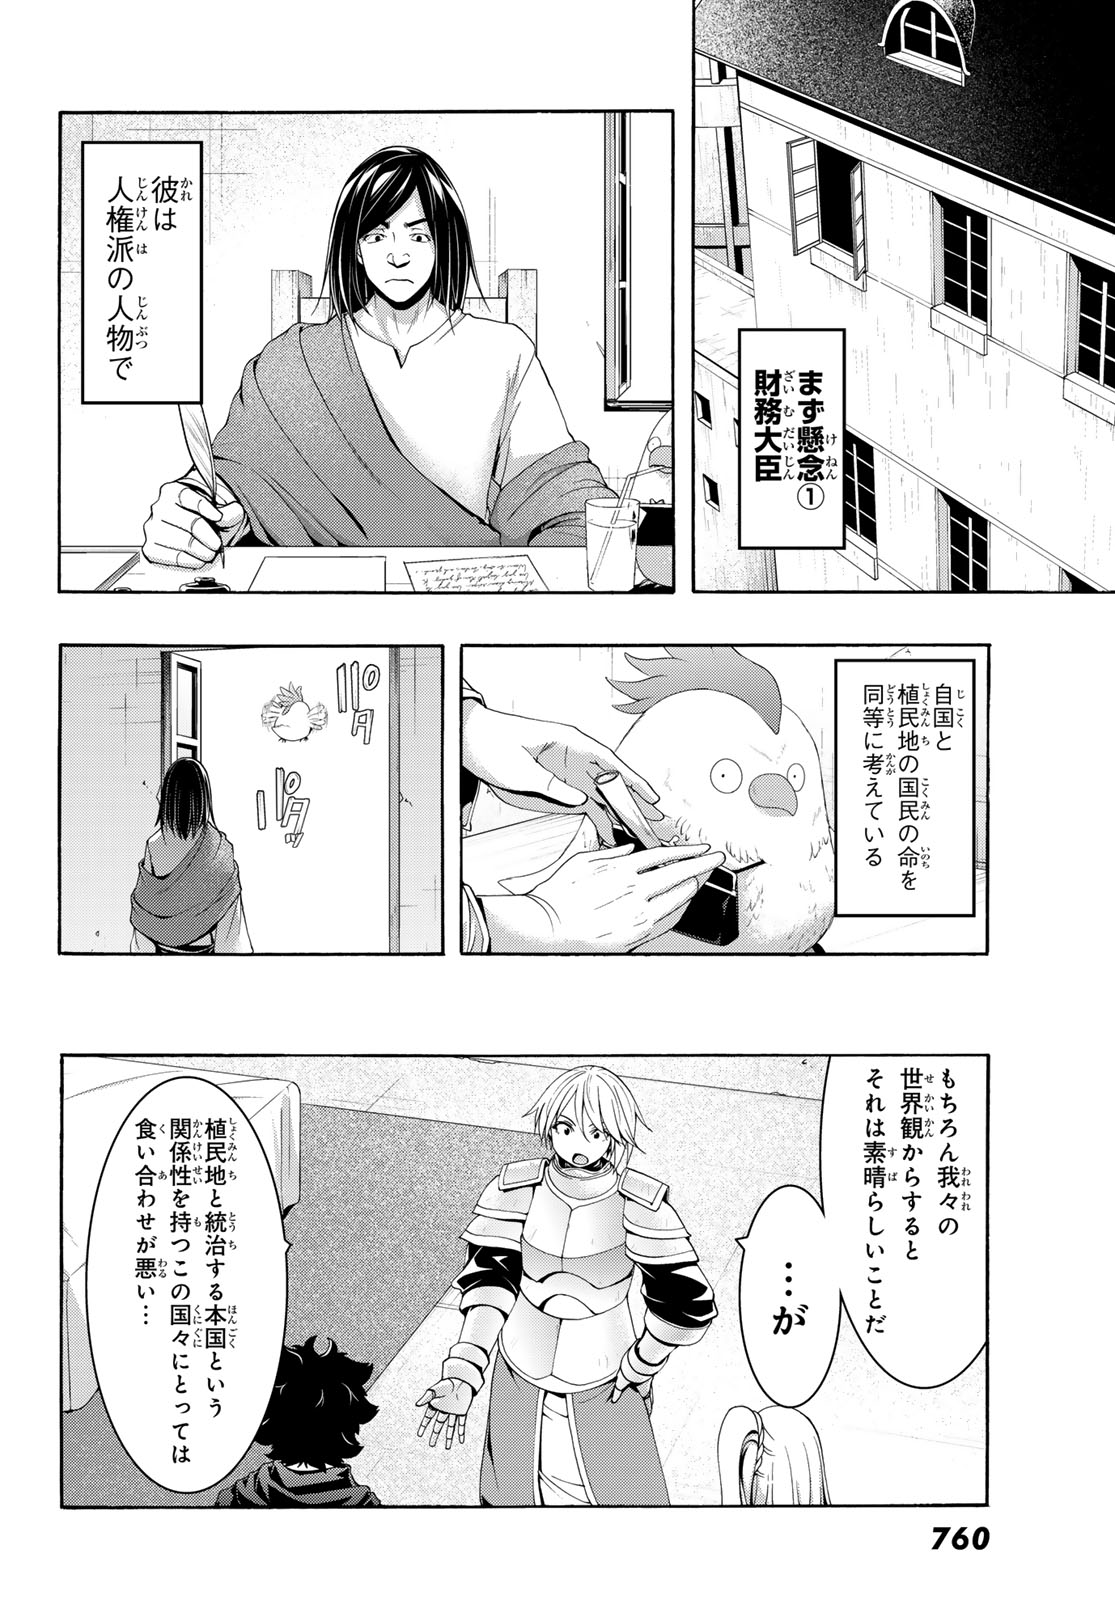 100-man no Inochi no Ue ni Ore wa Tatte Iru - Chapter 96 - Page 23